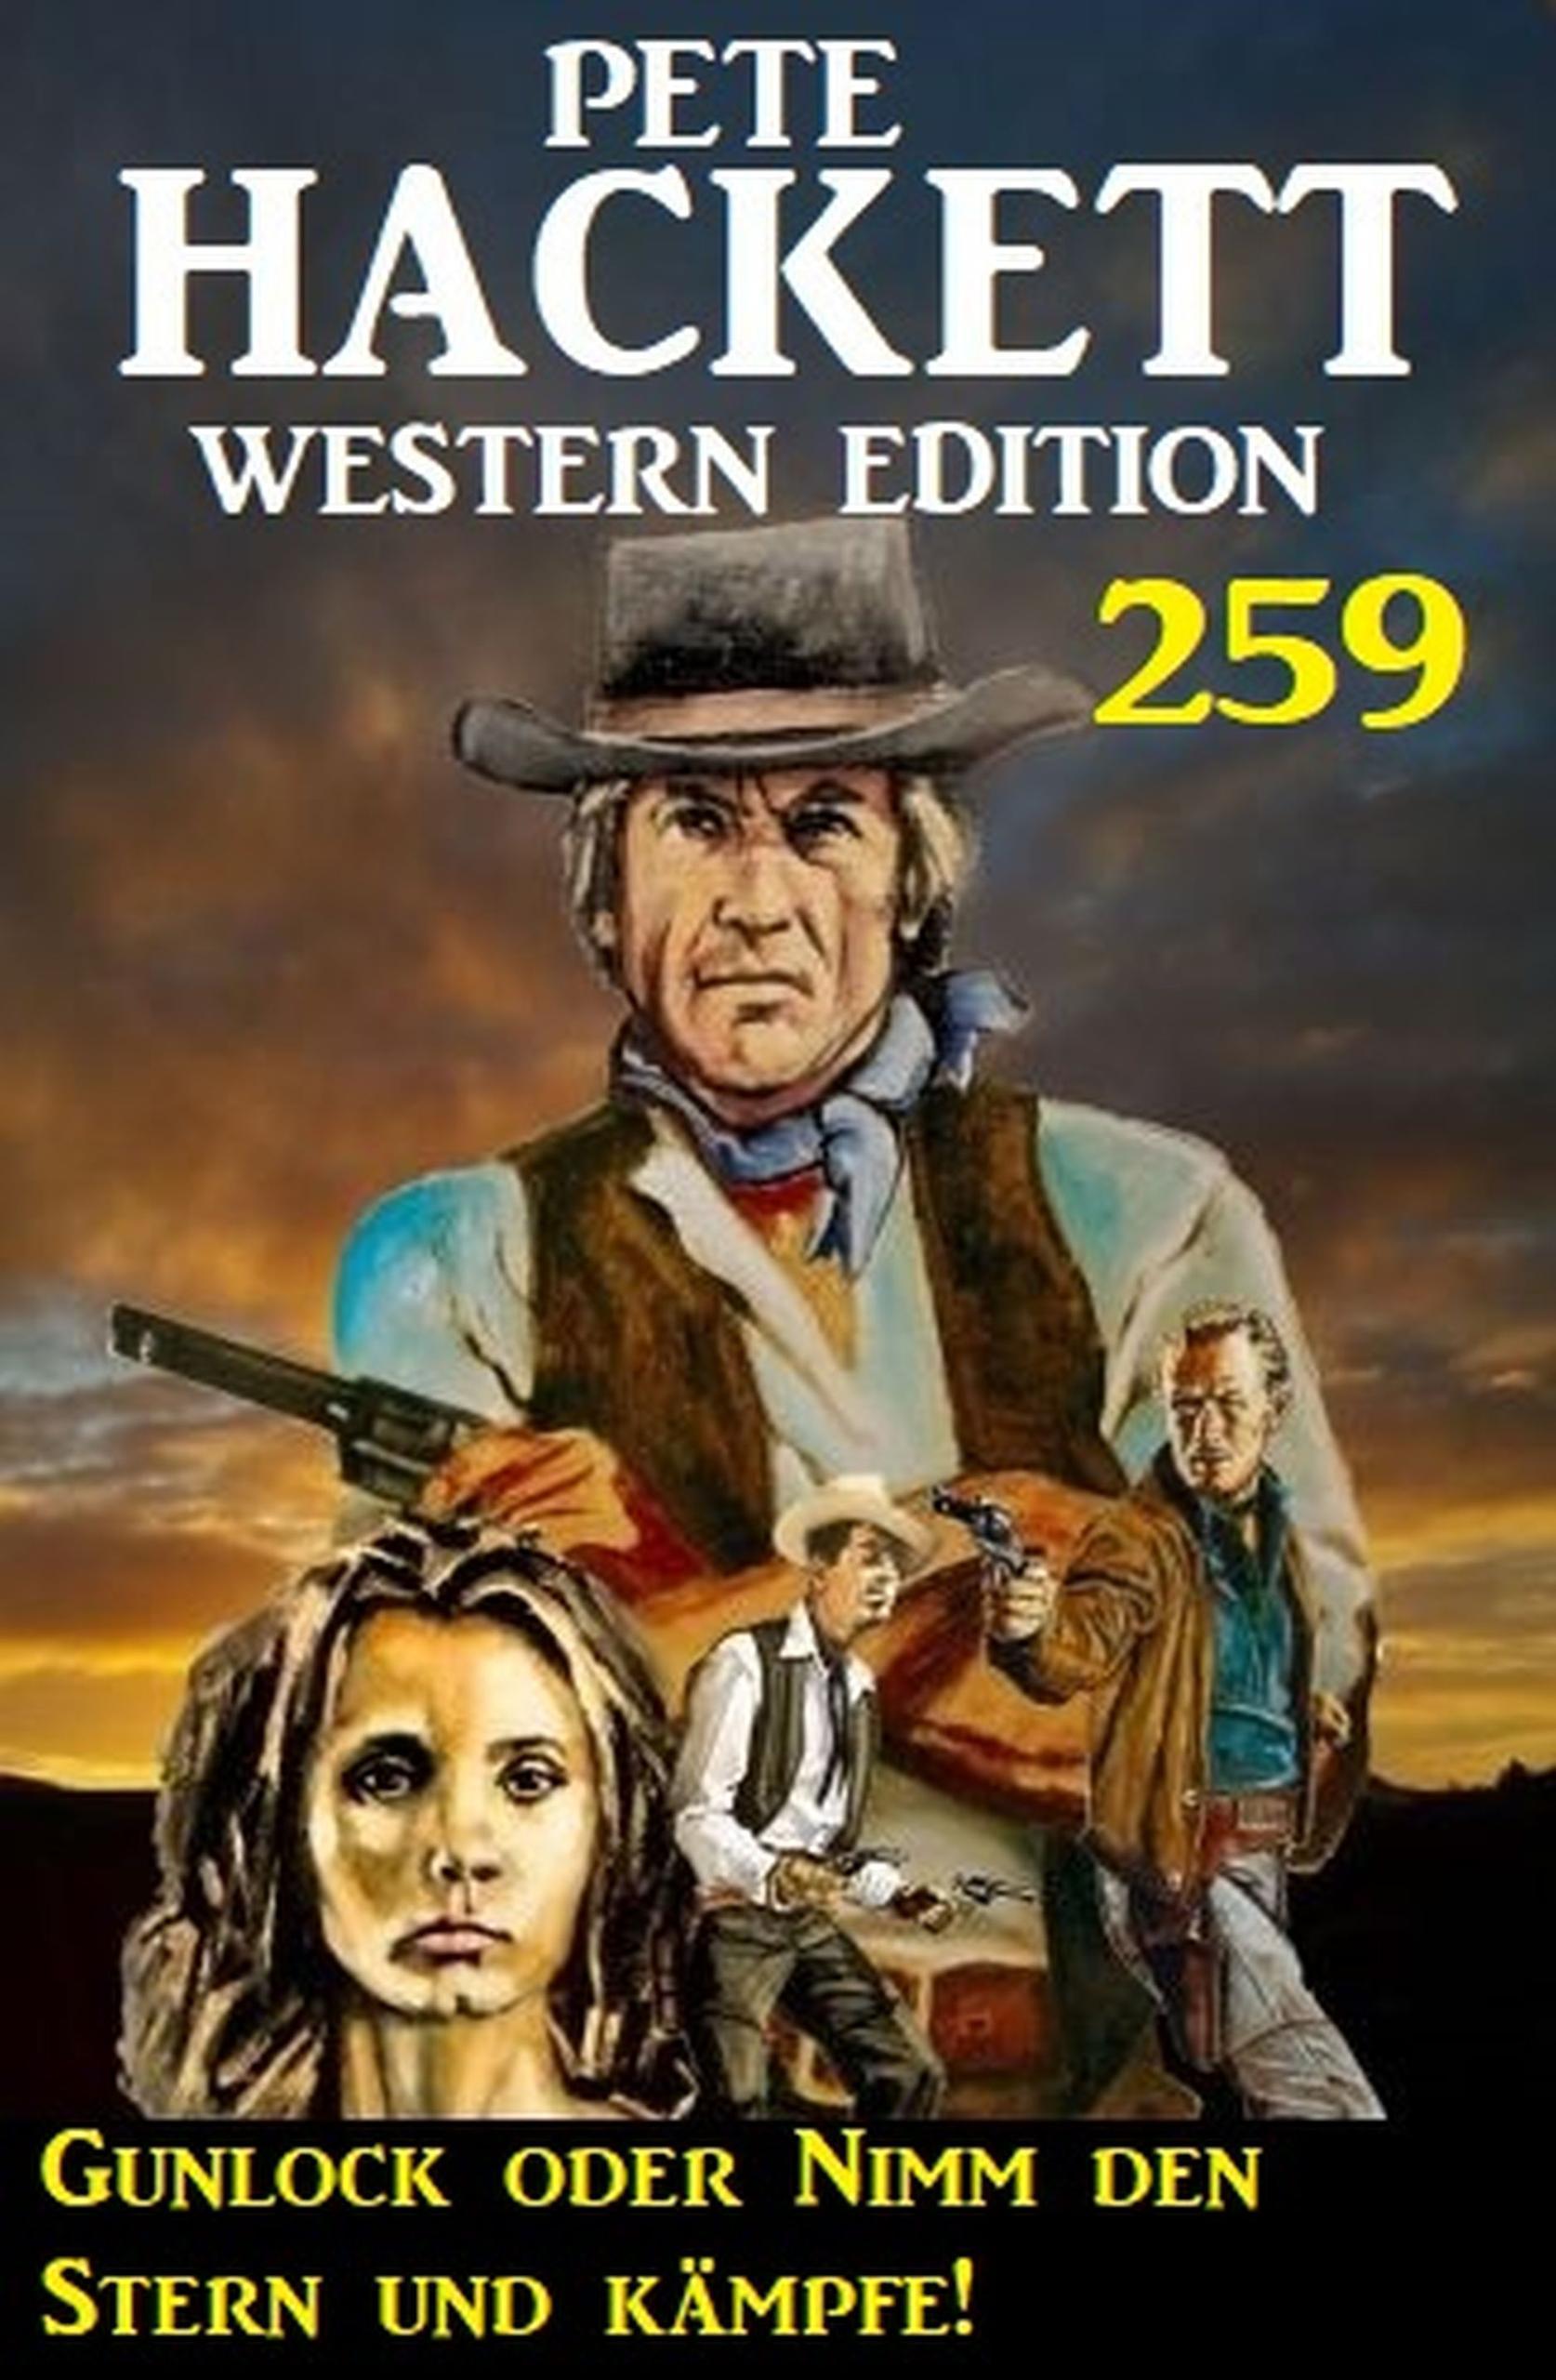 Gunlock oder Nimm den Stern und kämpfe! Pete Hackett Western Edition 259